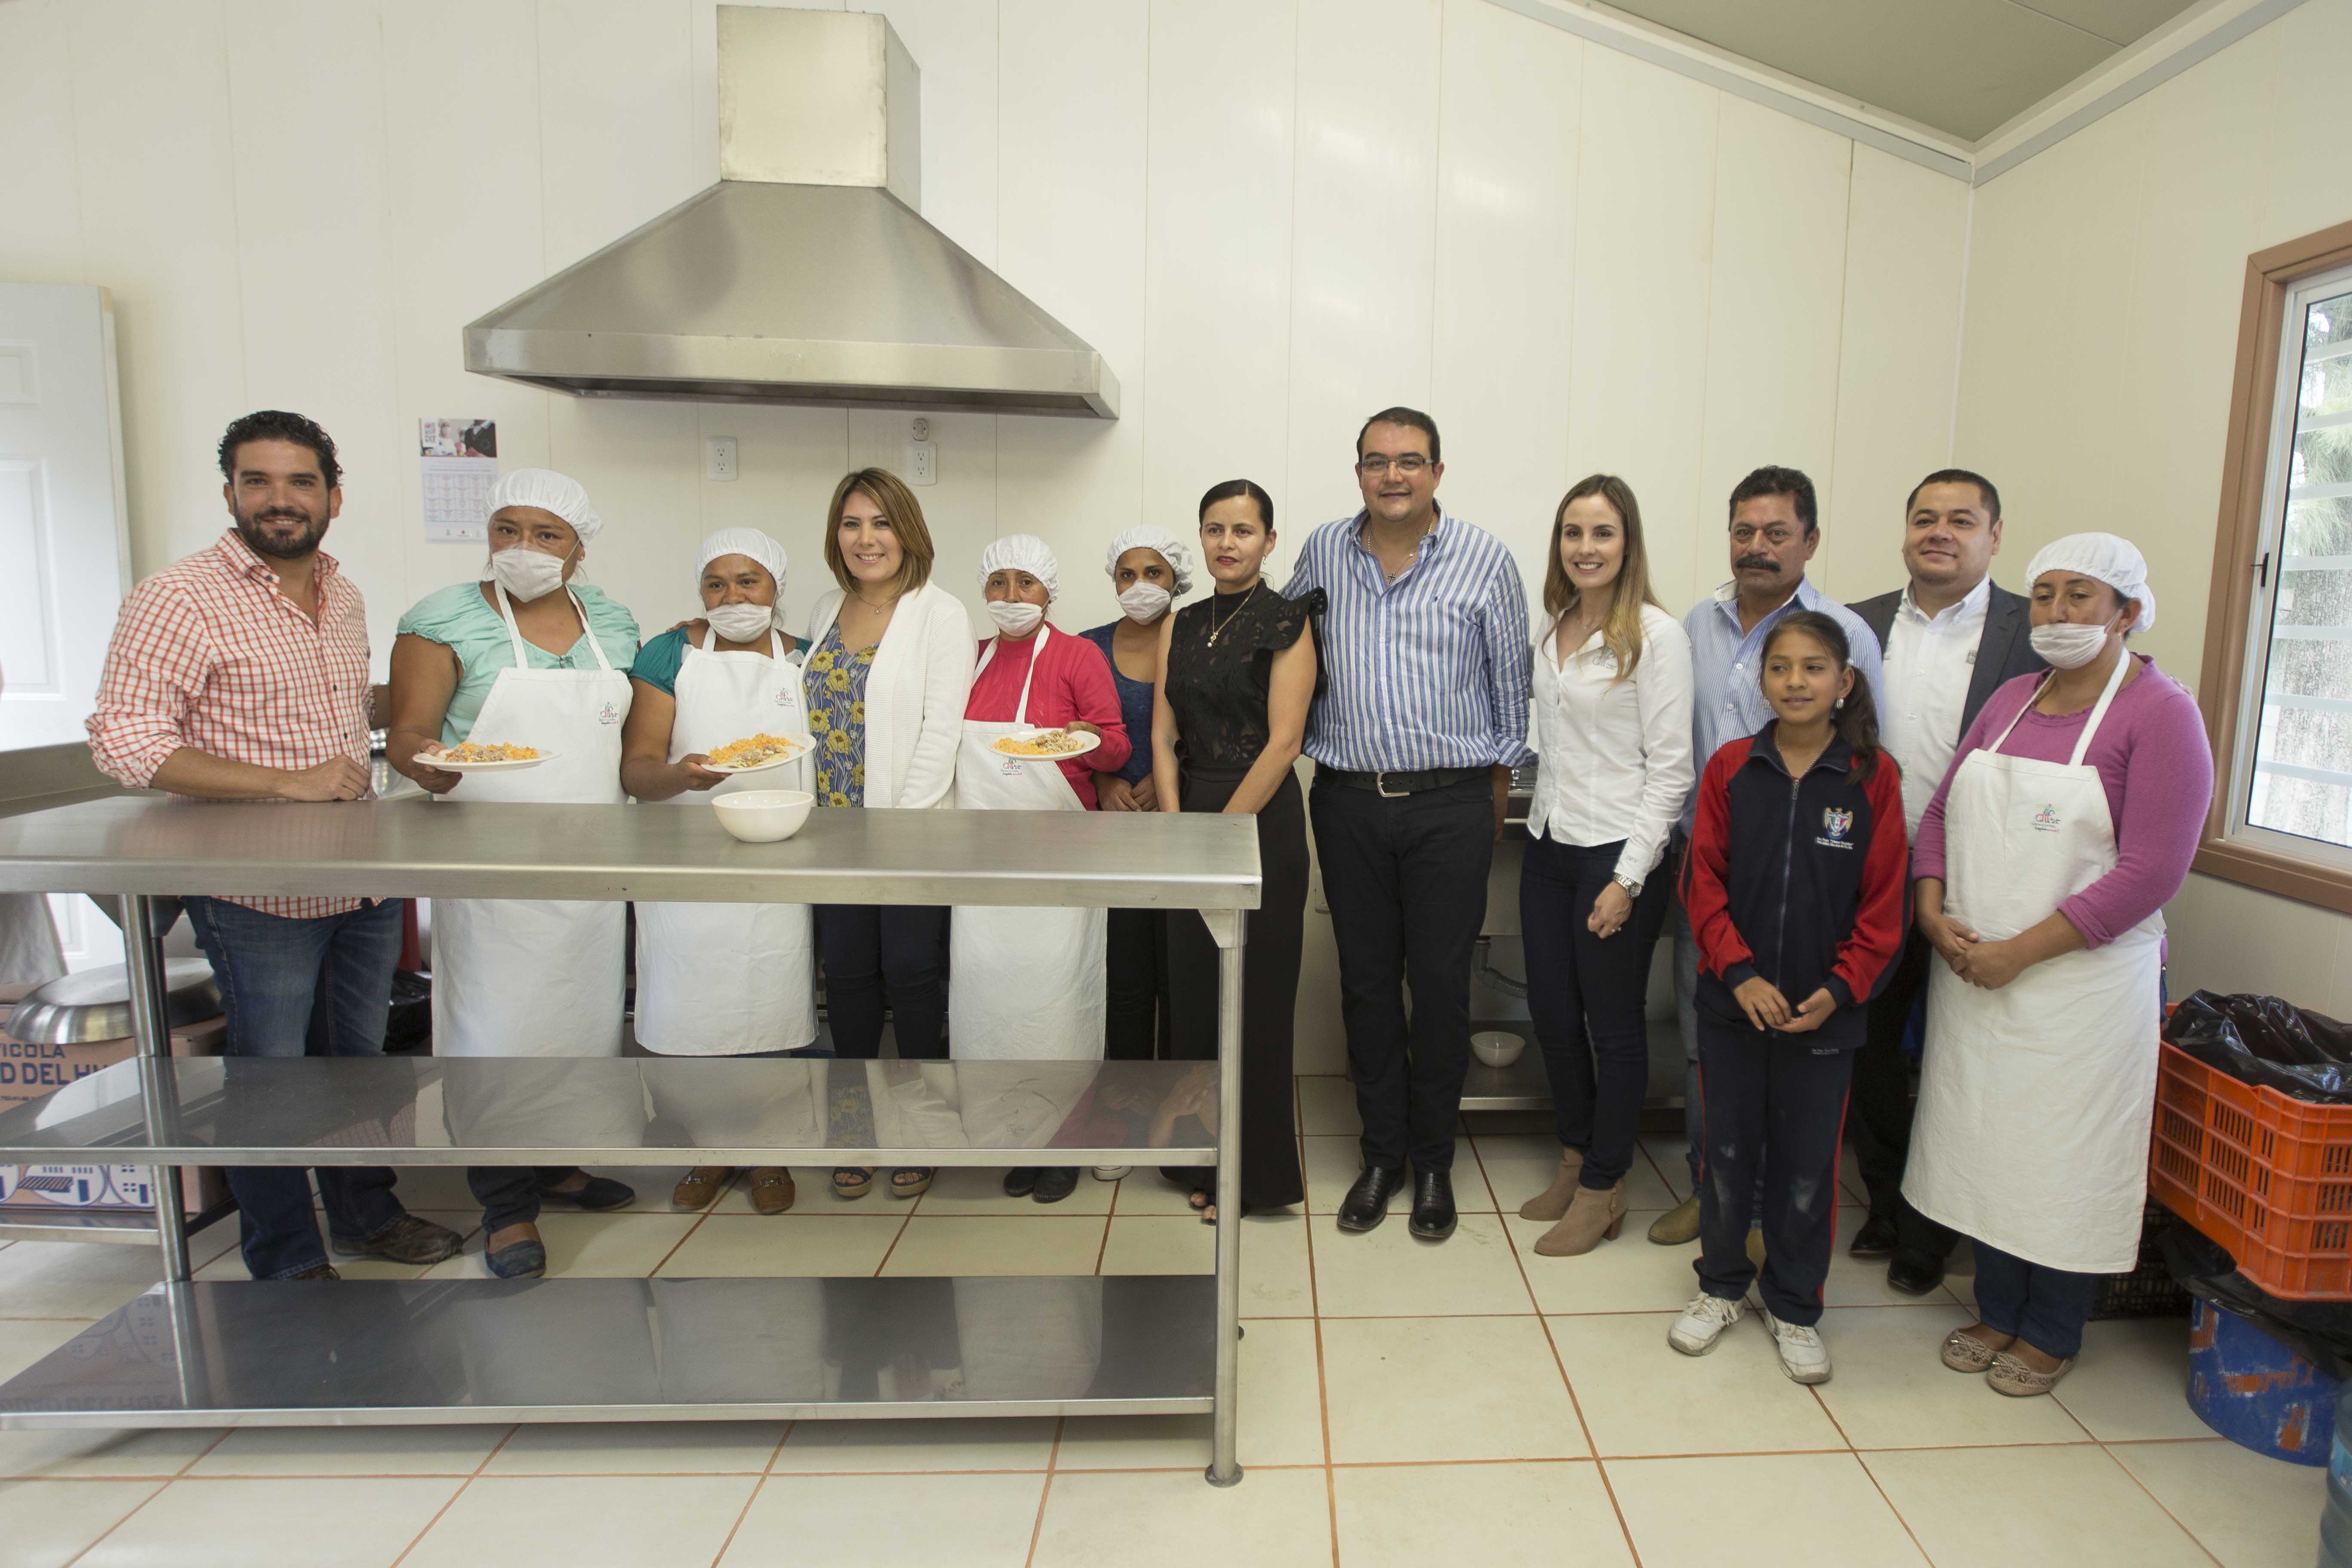  Municipio de San Juan del Río entrega aula-cocina en escuela primaria “Víctor Rosales”